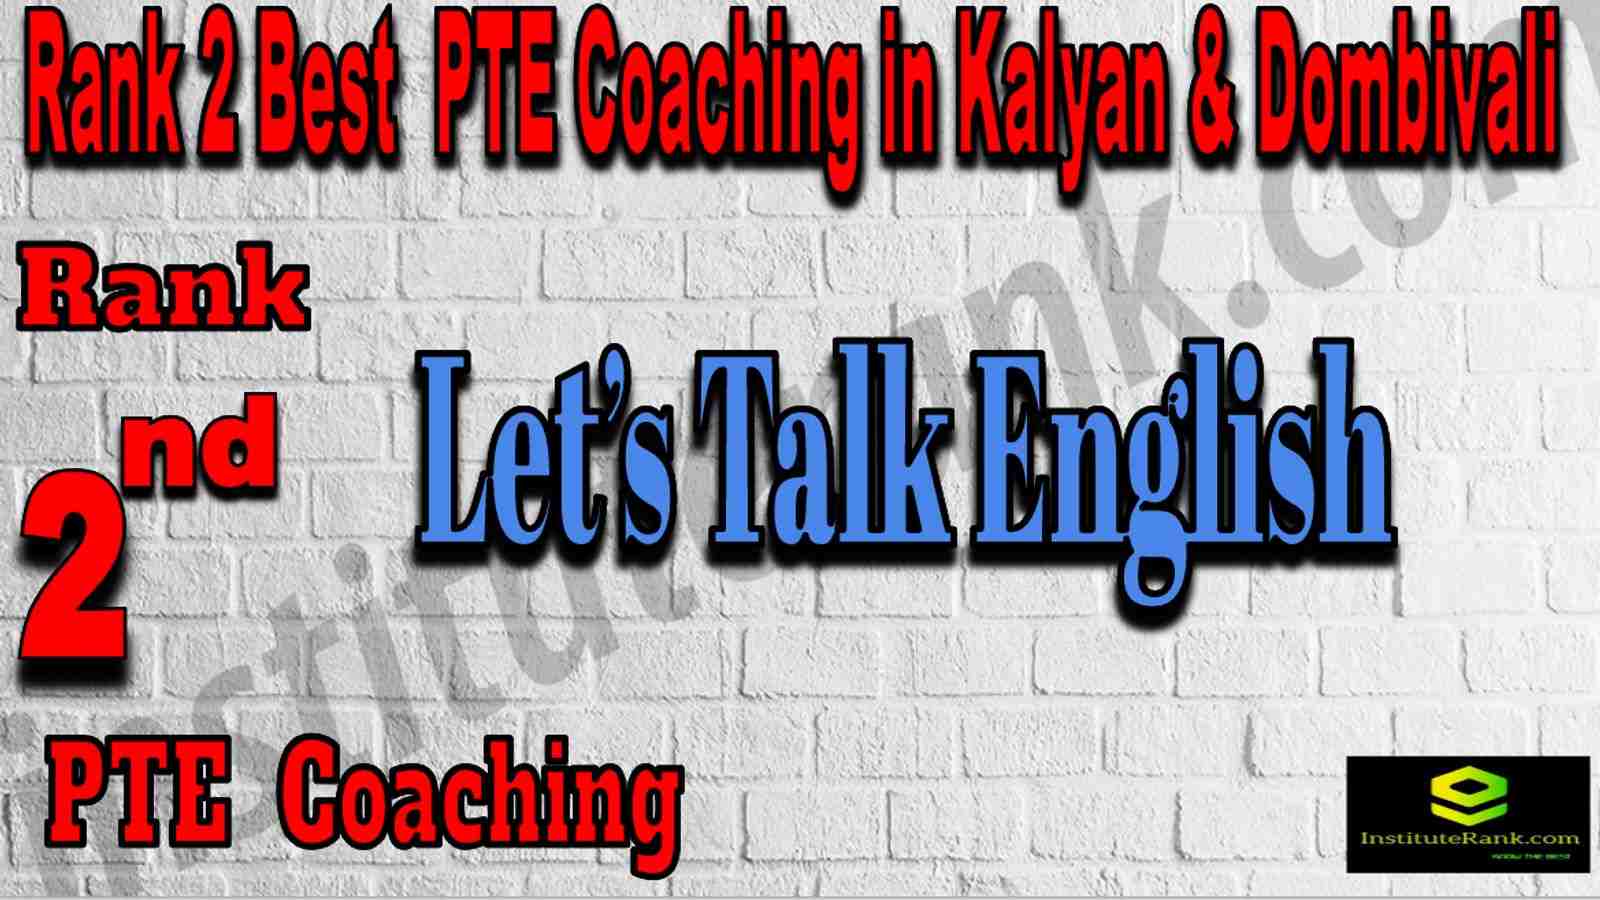 Rank 2 Best PTE Coaching in Kalyan & Dombivali